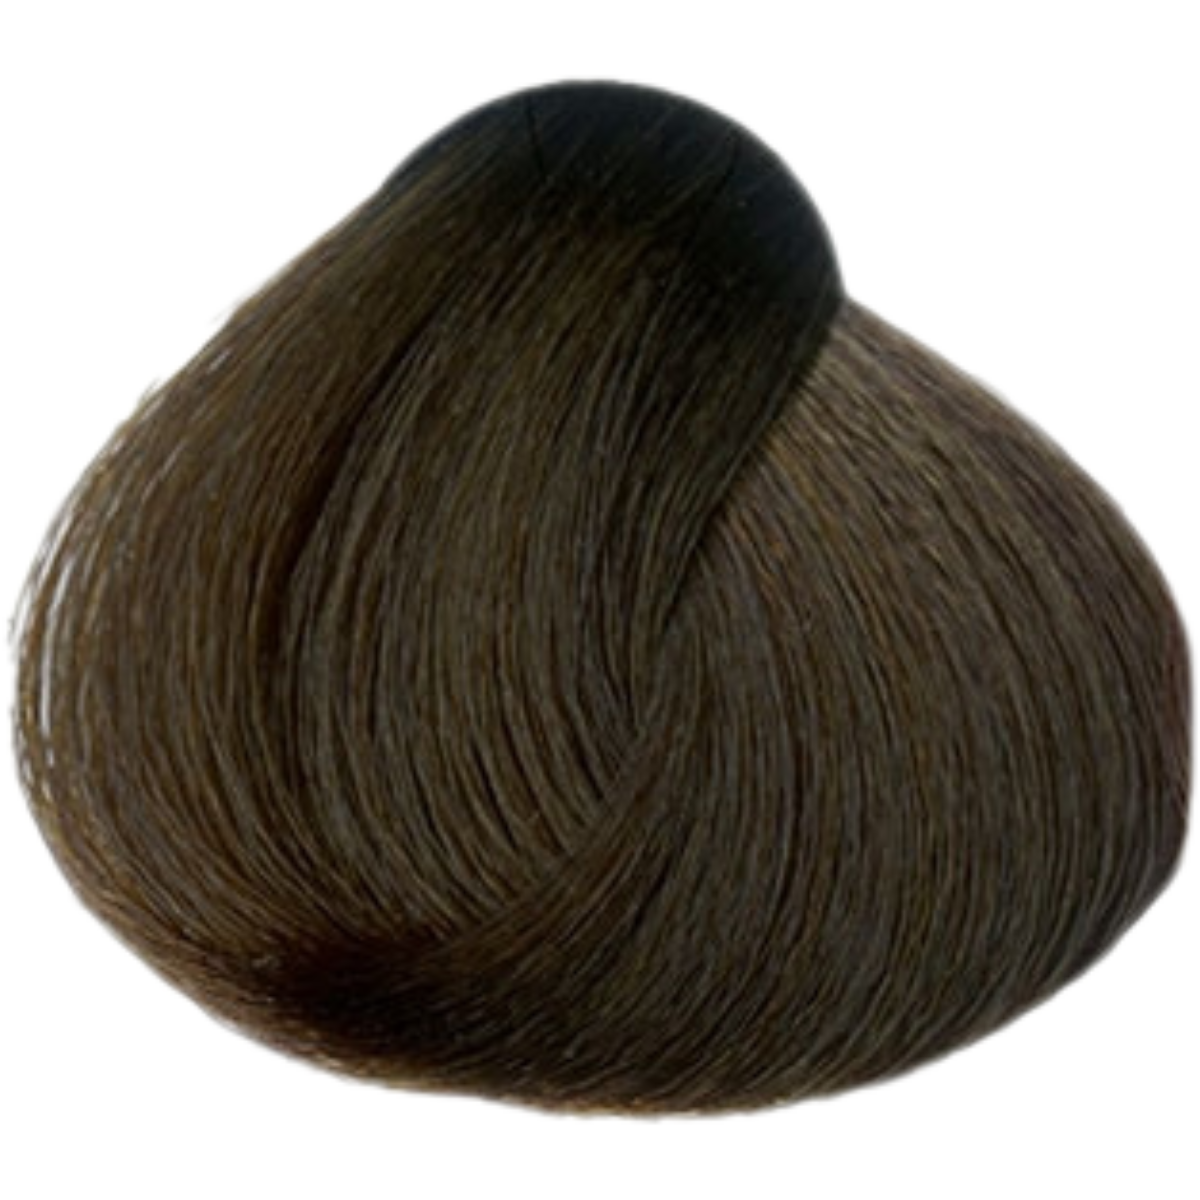 צבע שיער 6.35 DARK CHOCOLATE BLONDE פארמויטה FarmaVita צבע לשיער 60 גרם